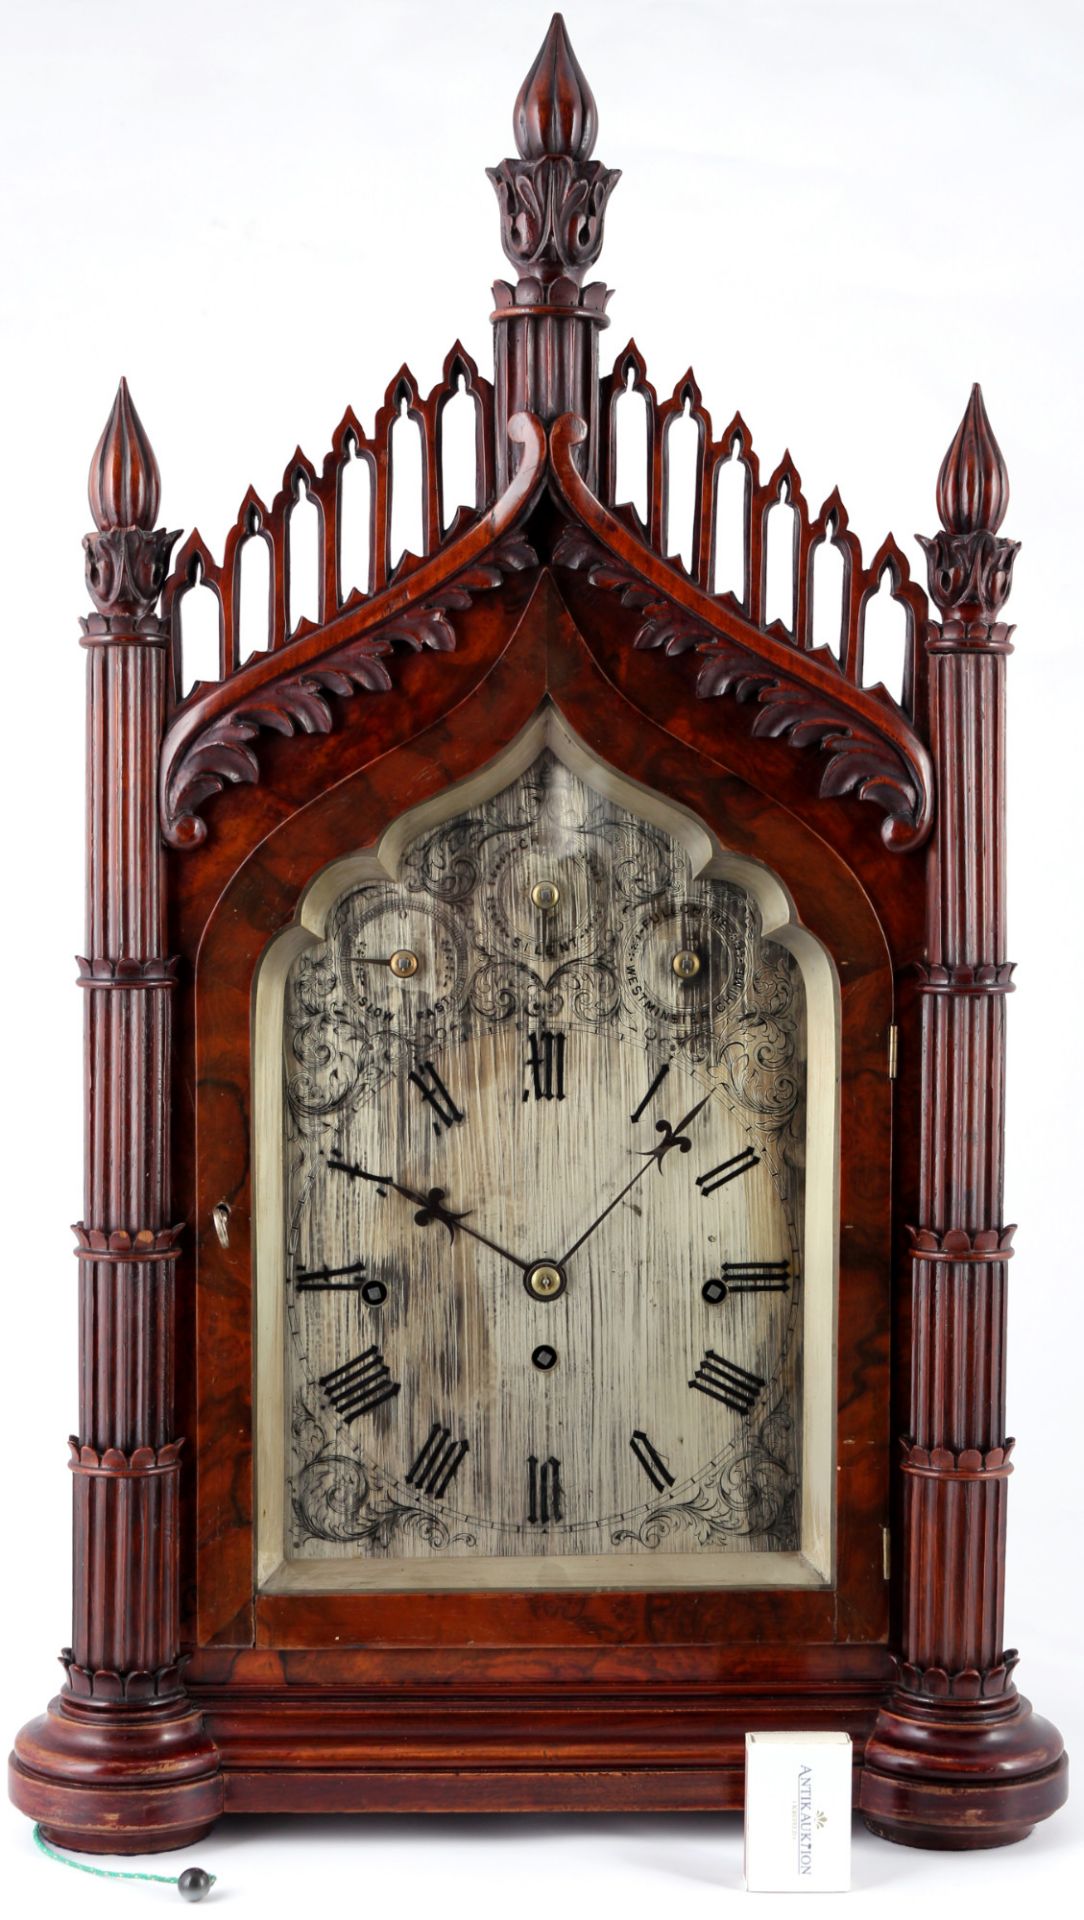 Große Stockuhr H 68 cm, England 19. Jahrhundert, bracket clock,